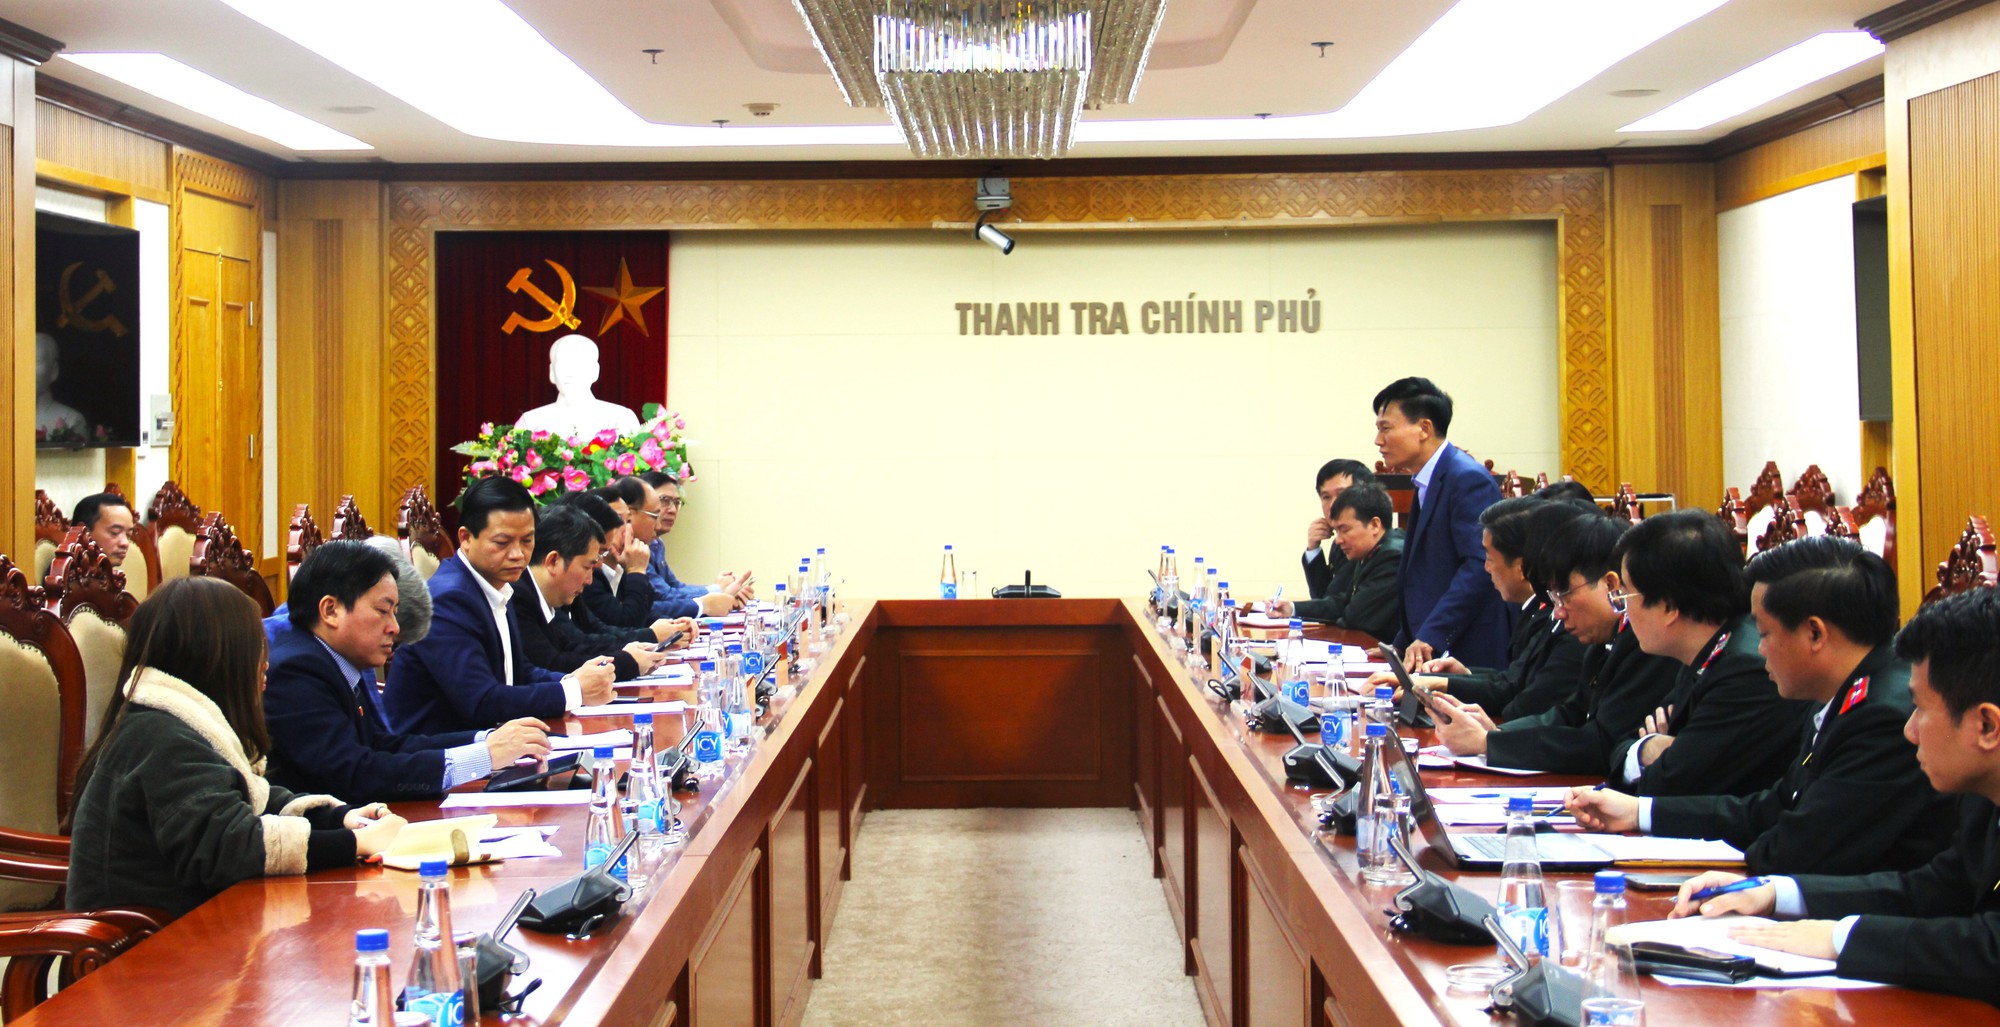 Tiến hành thanh tra thực hiện công vụ tại Bộ Tài chính, Bộ KHĐT và UBND tỉnh Bắc Ninh- Ảnh 2.